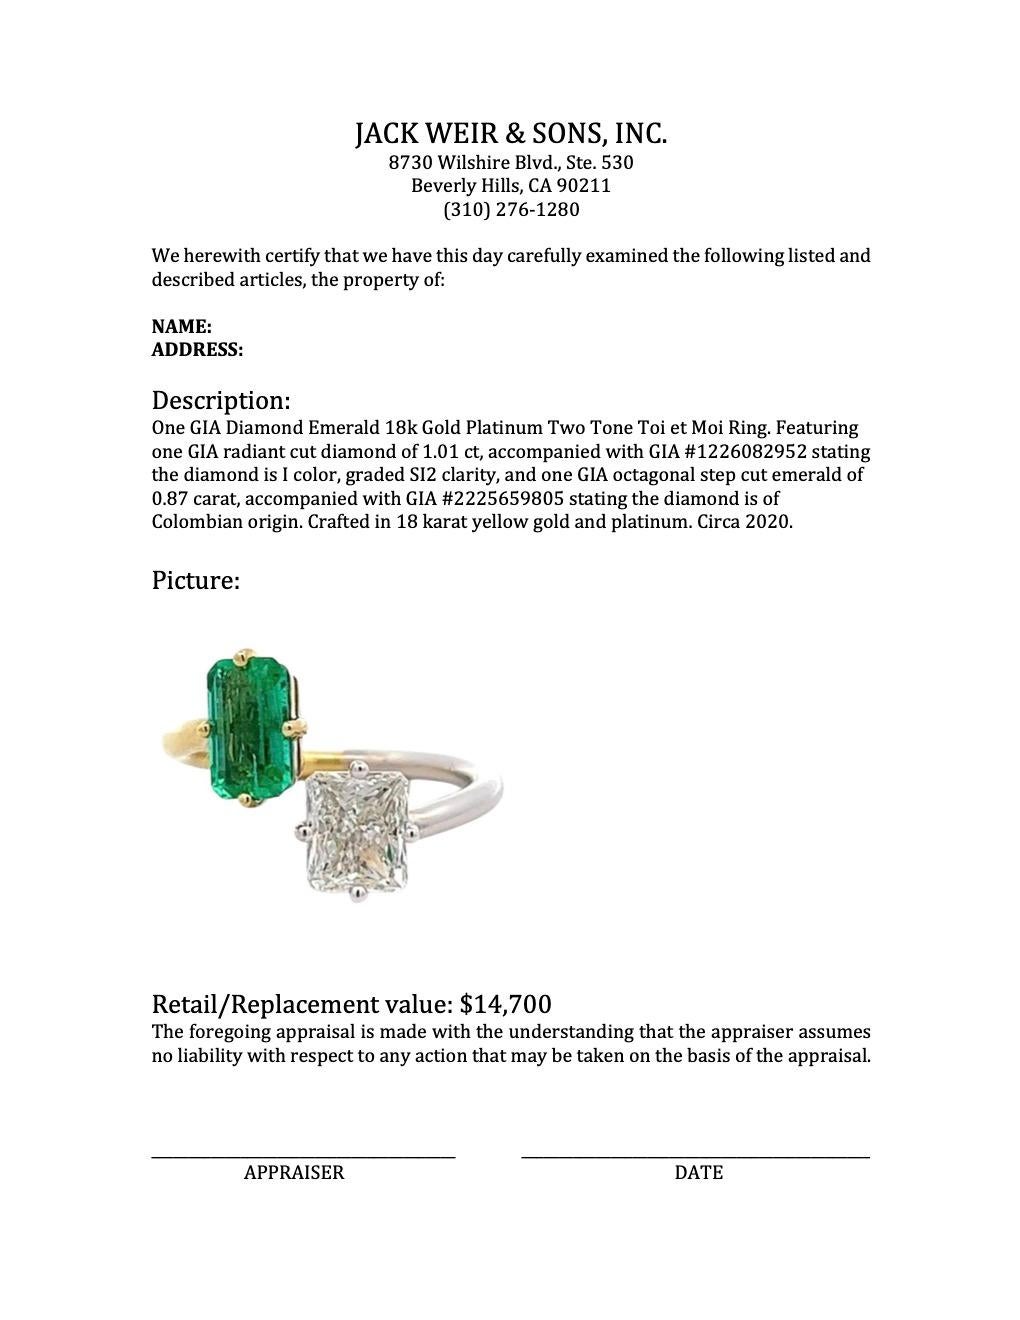 GIA Diamond Emerald 18k Gold Platinum Two Tone Toi et Moi Ring 2